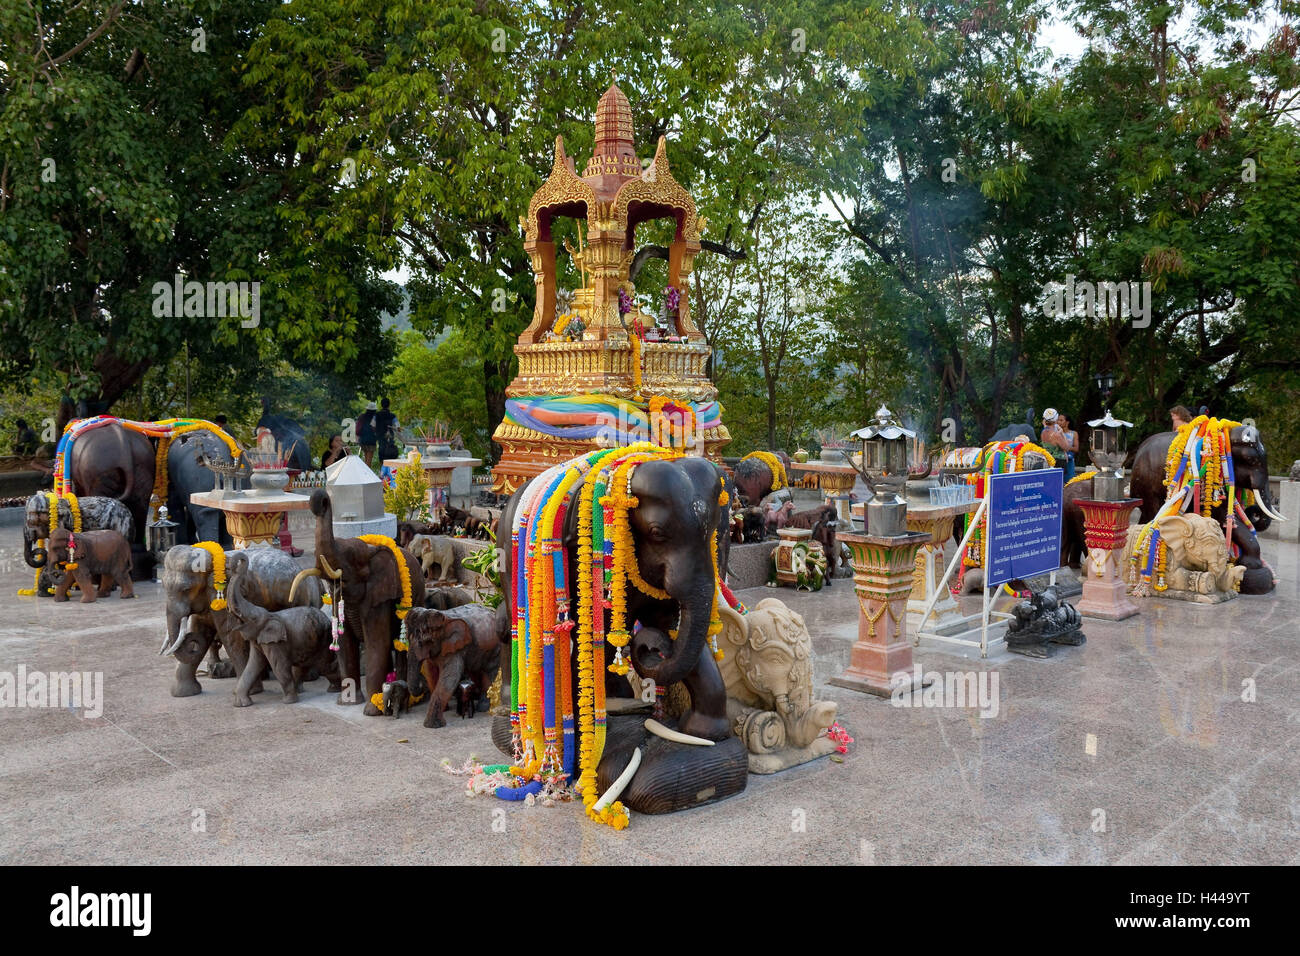 La Thaïlande, Phuket, Cape Laem Promthep, d''articles de toilette, des figurines, de l'éléphant Banque D'Images